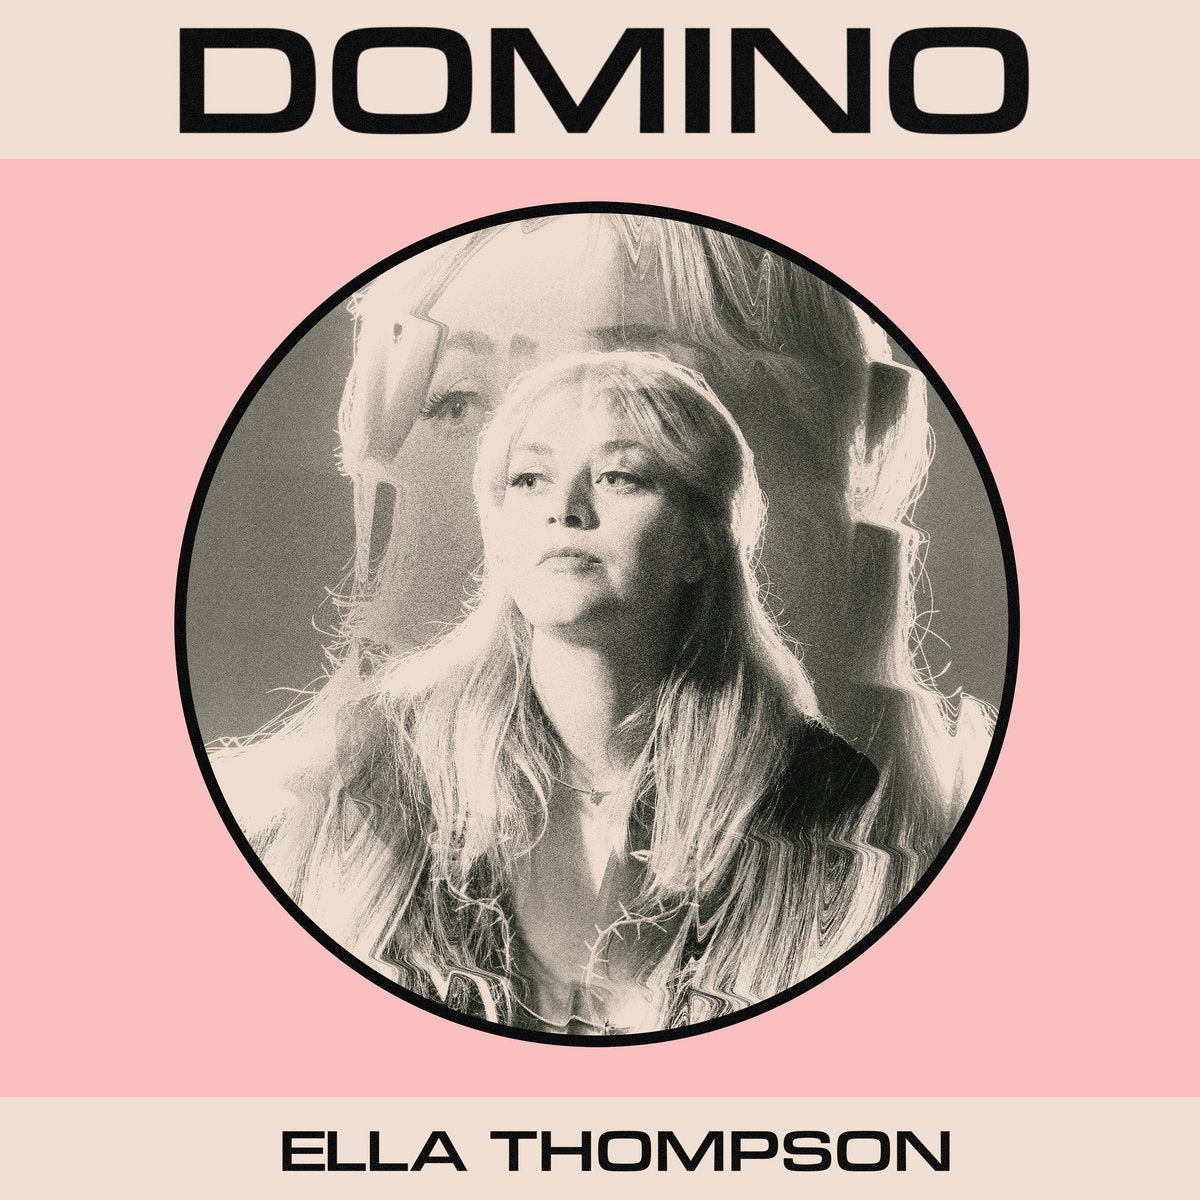 Ella Thompson - Domino